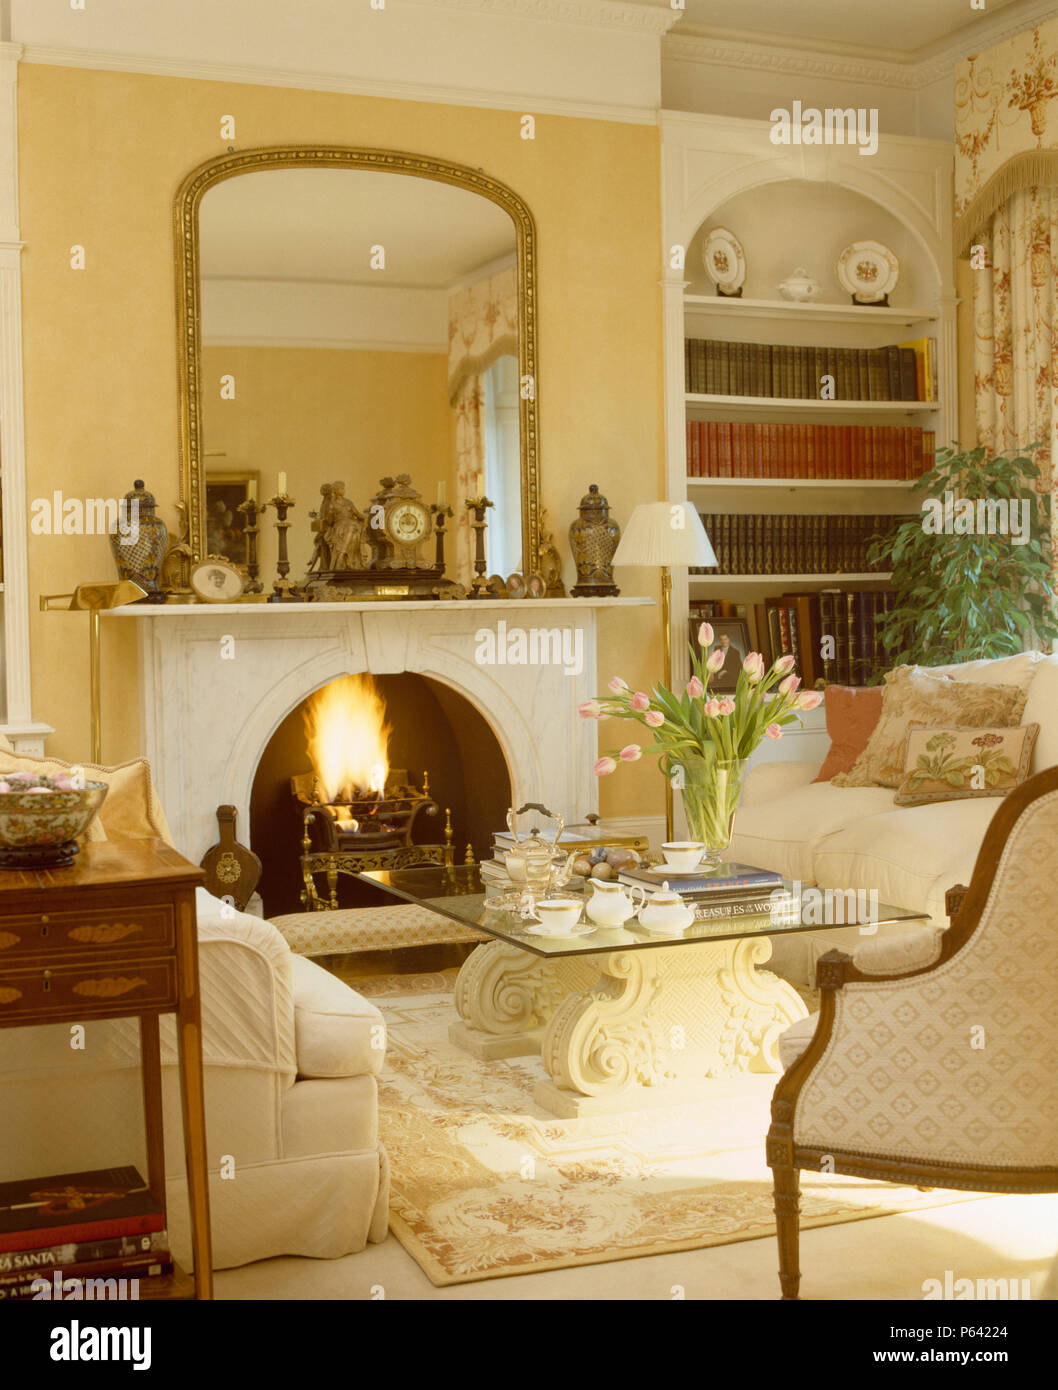 Grand miroir ancien doré au-dessus de cheminée en marbre avec feu allumé dans la salle de séjour avec le service à verre +table basse pierre Banque D'Images